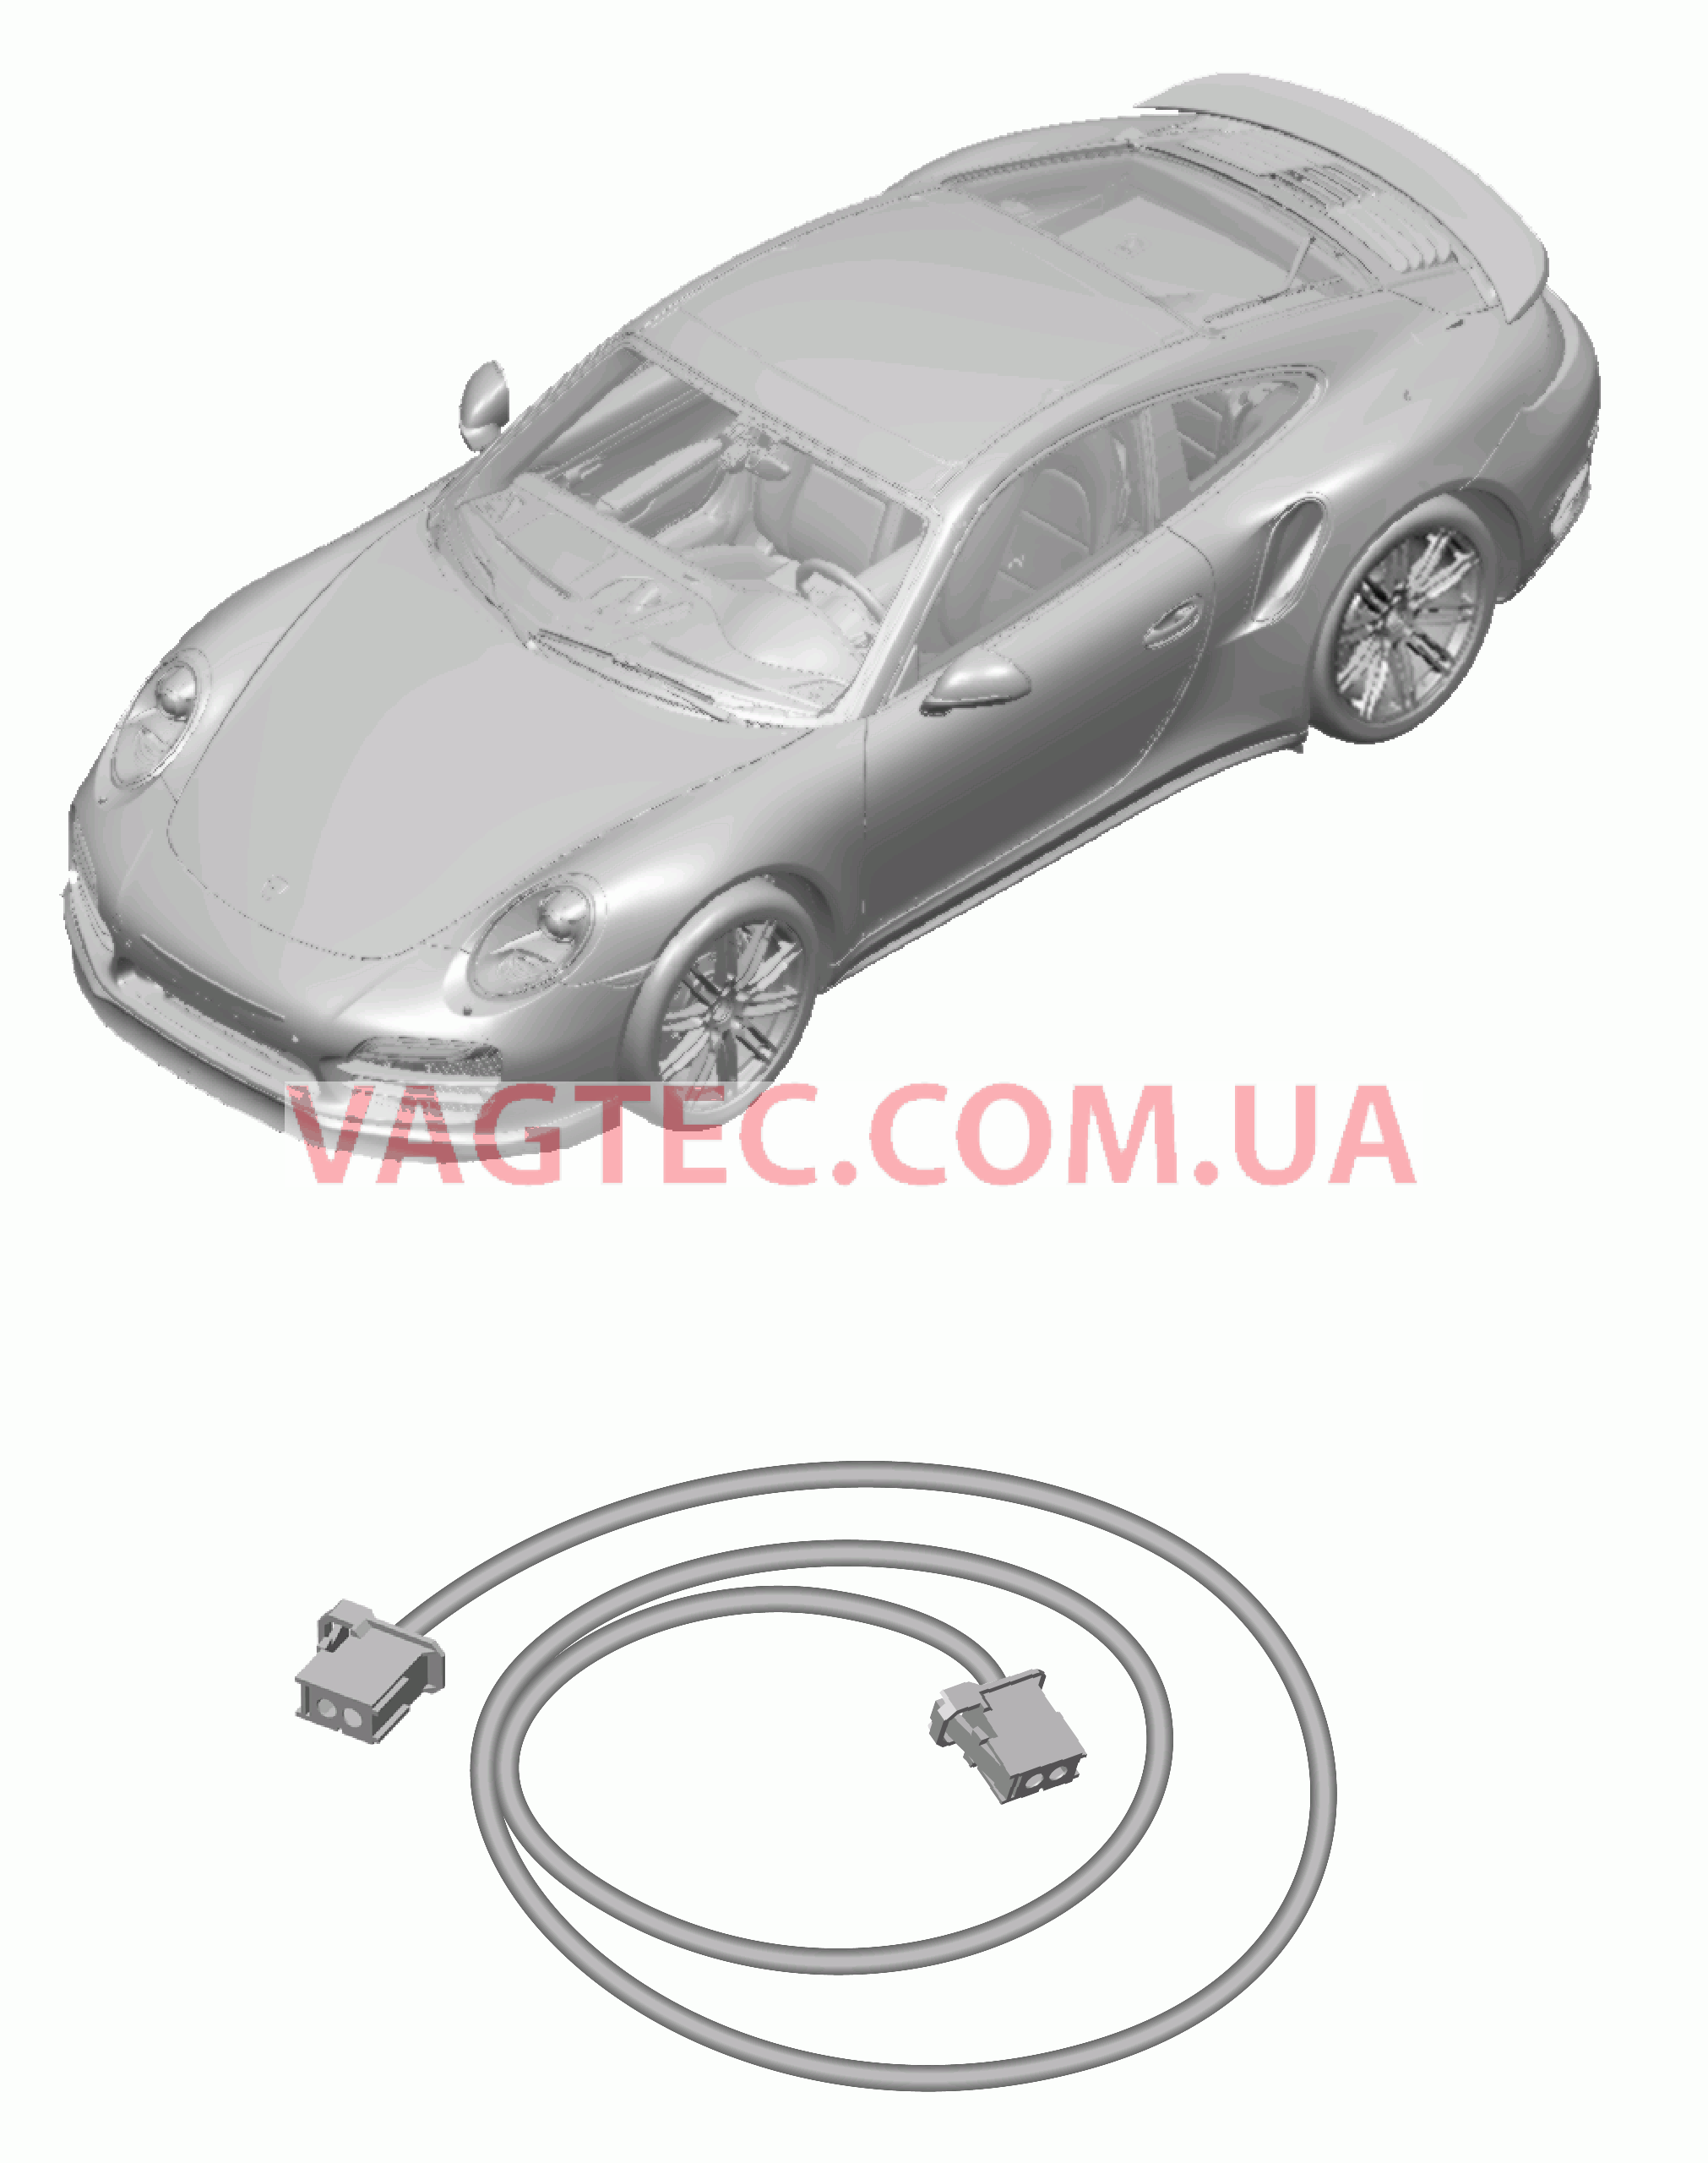 902-060 Жгуты проводов, Подушка безопасности, Ремень безопасности для PORSCHE Porsche991Turbo 2014-2017USA